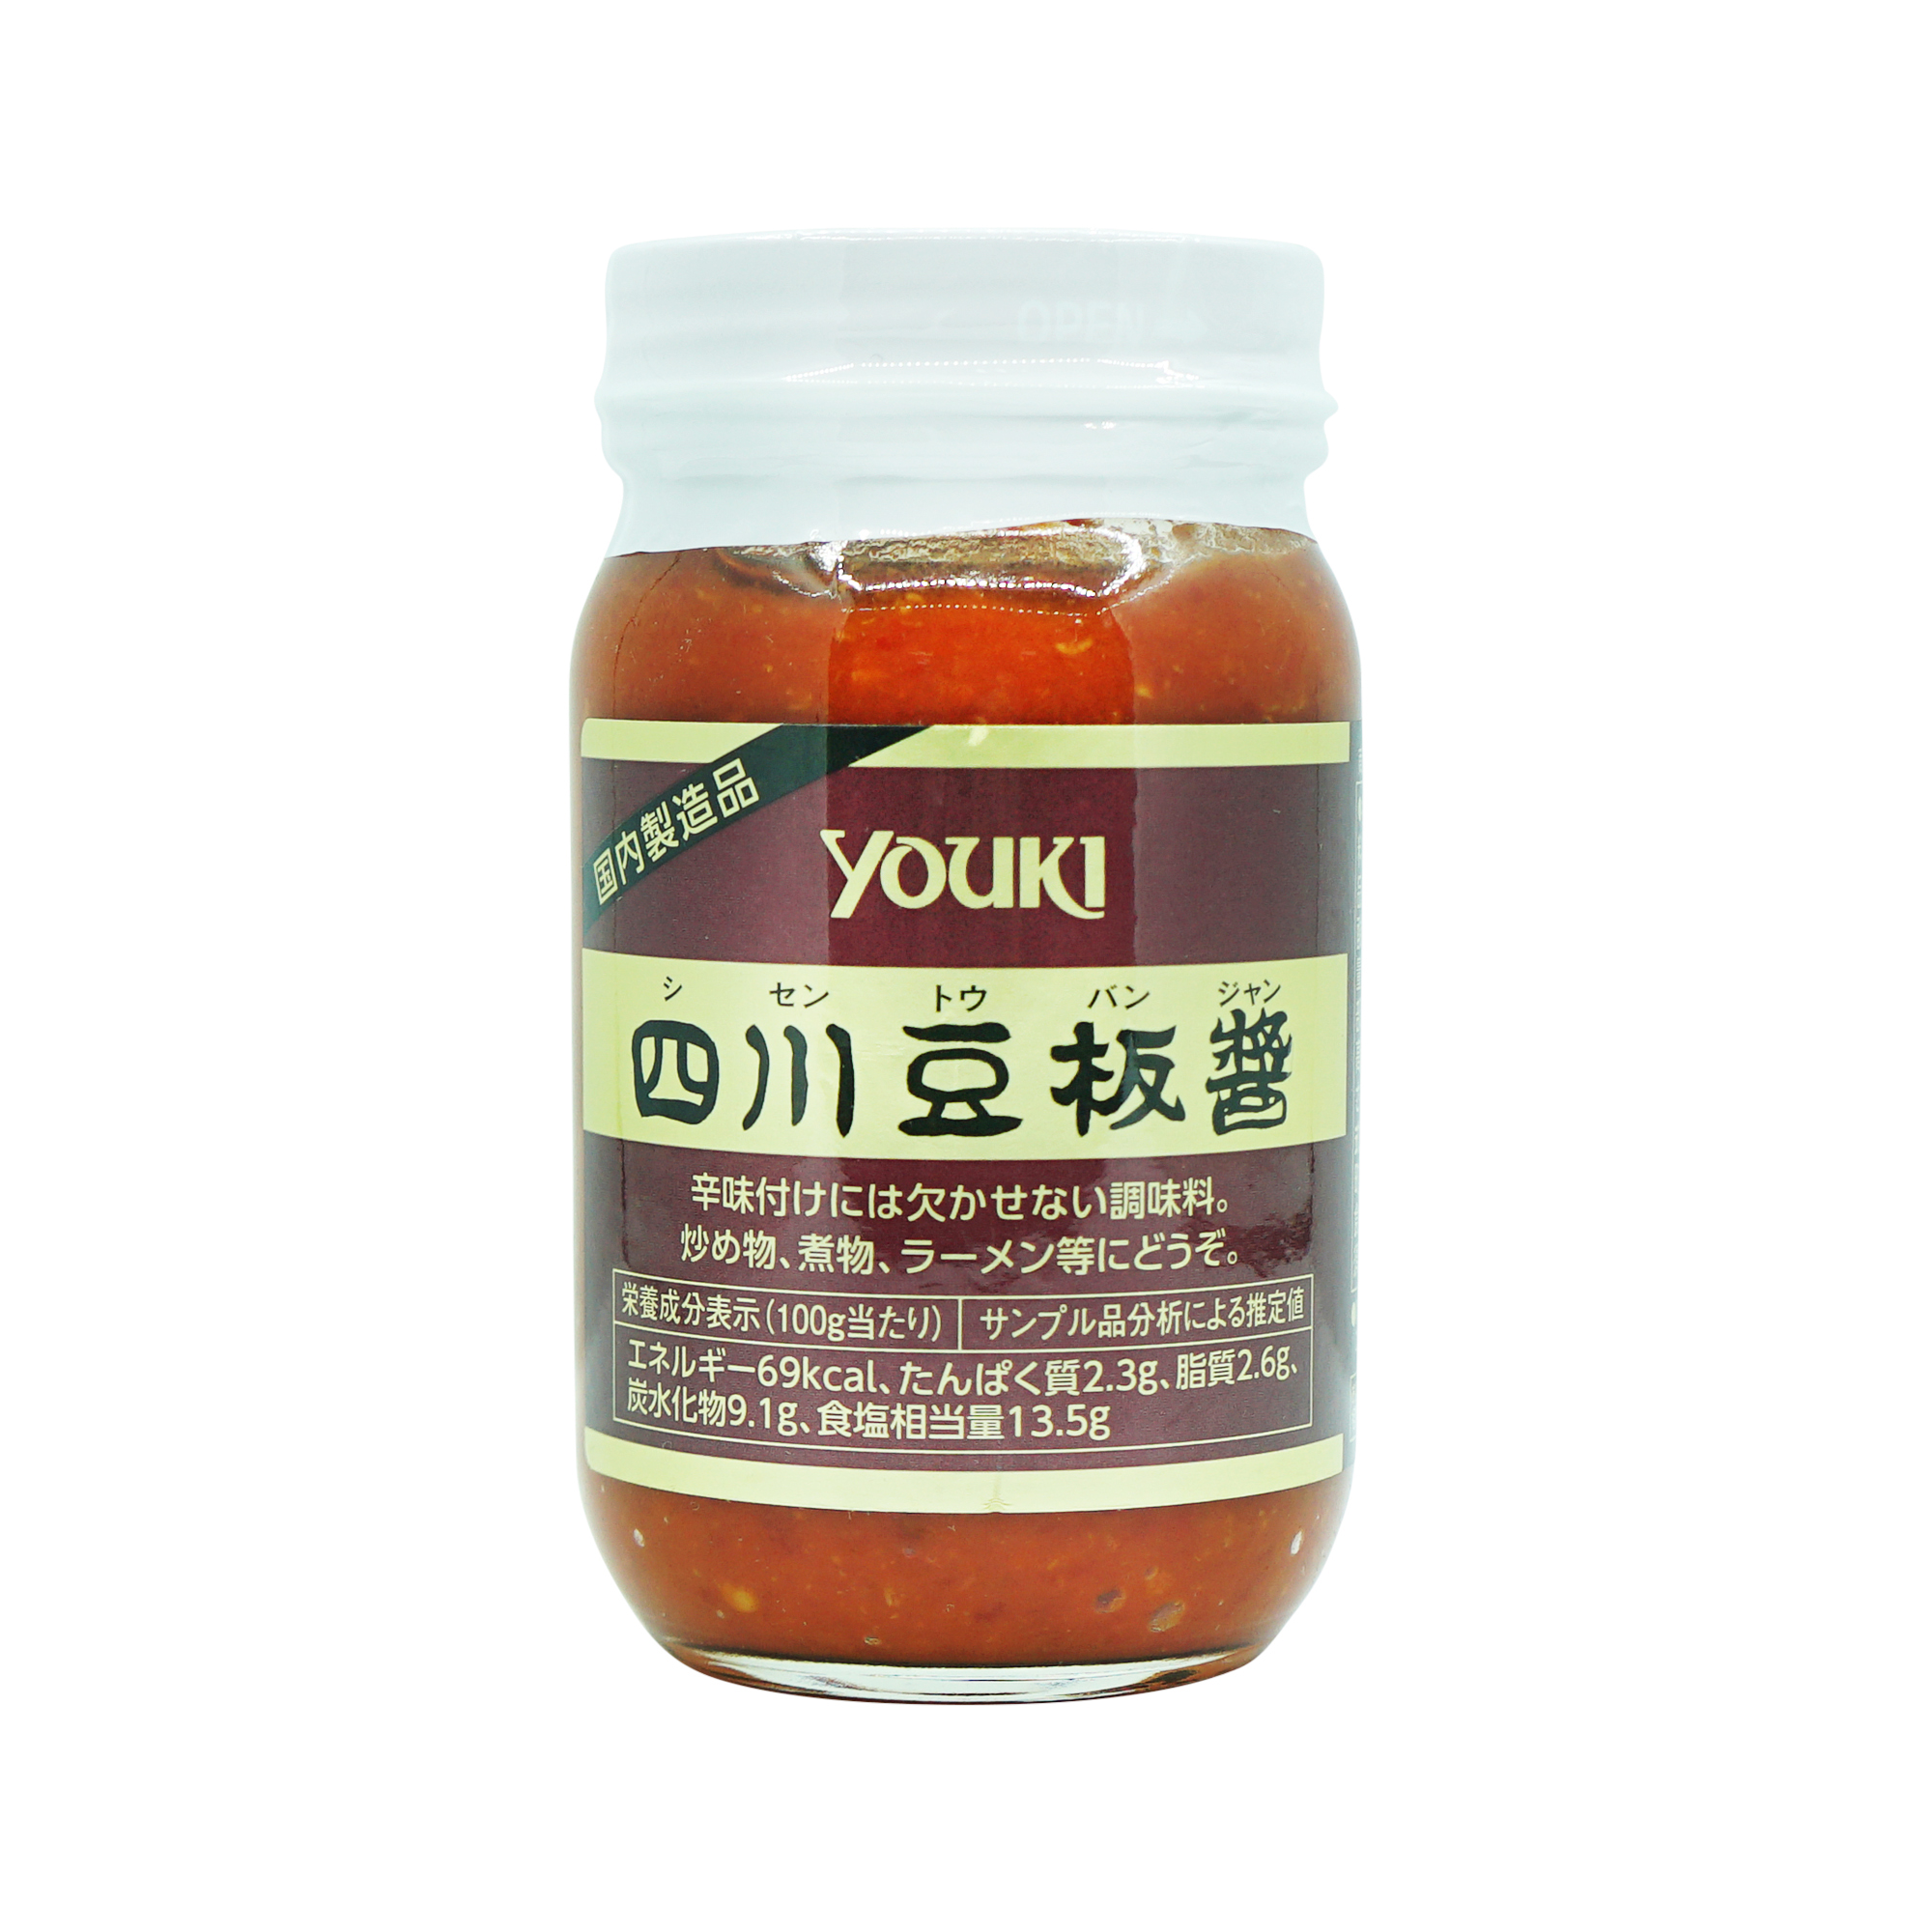 Youki Seasoned Chili Sauce 225g